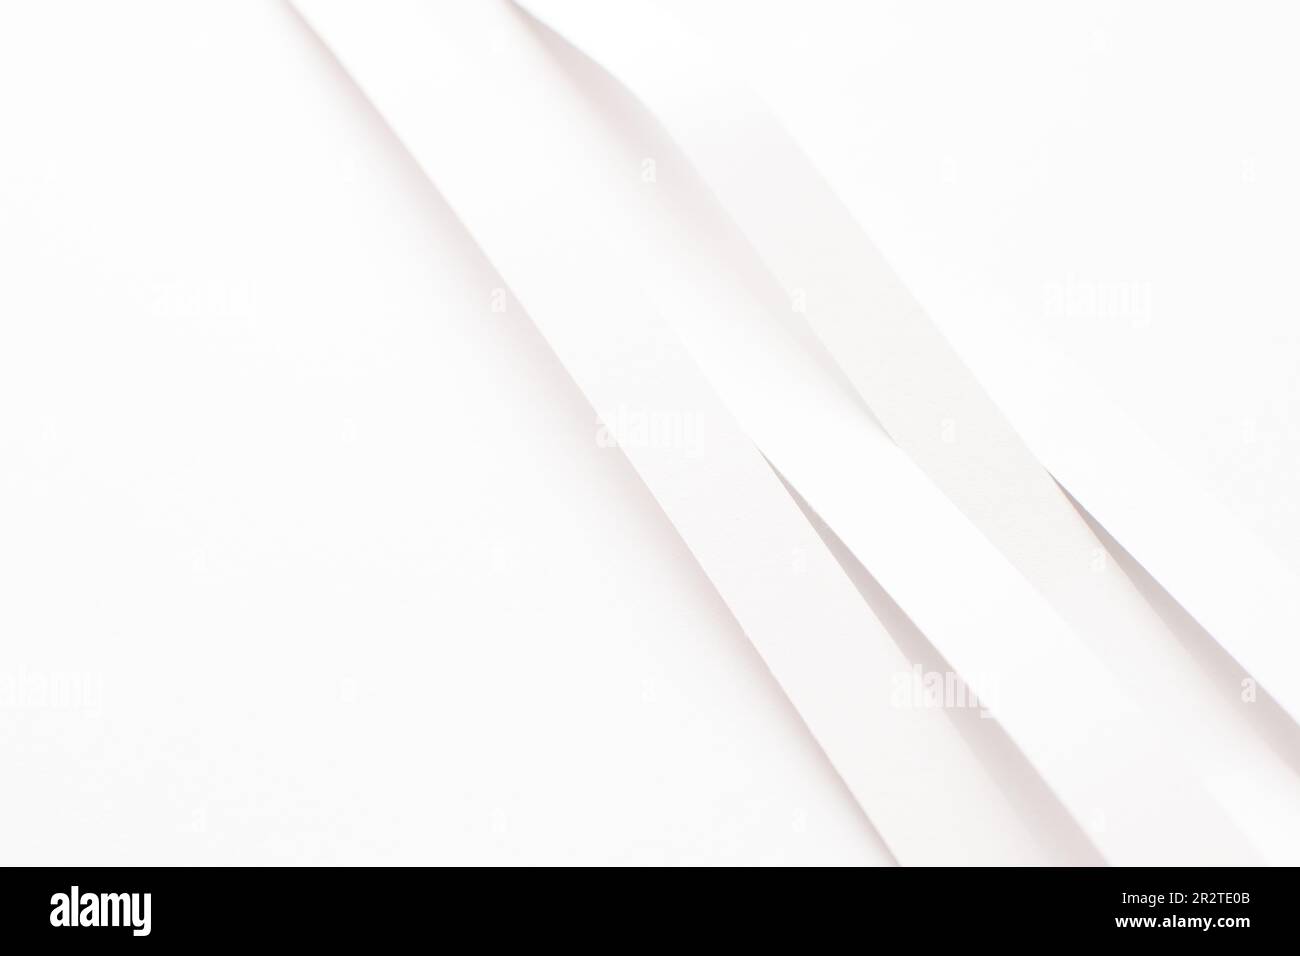 Arrière-plan blanc abstrait avec 3D bandes blanches courbes, espace de copie Banque D'Images